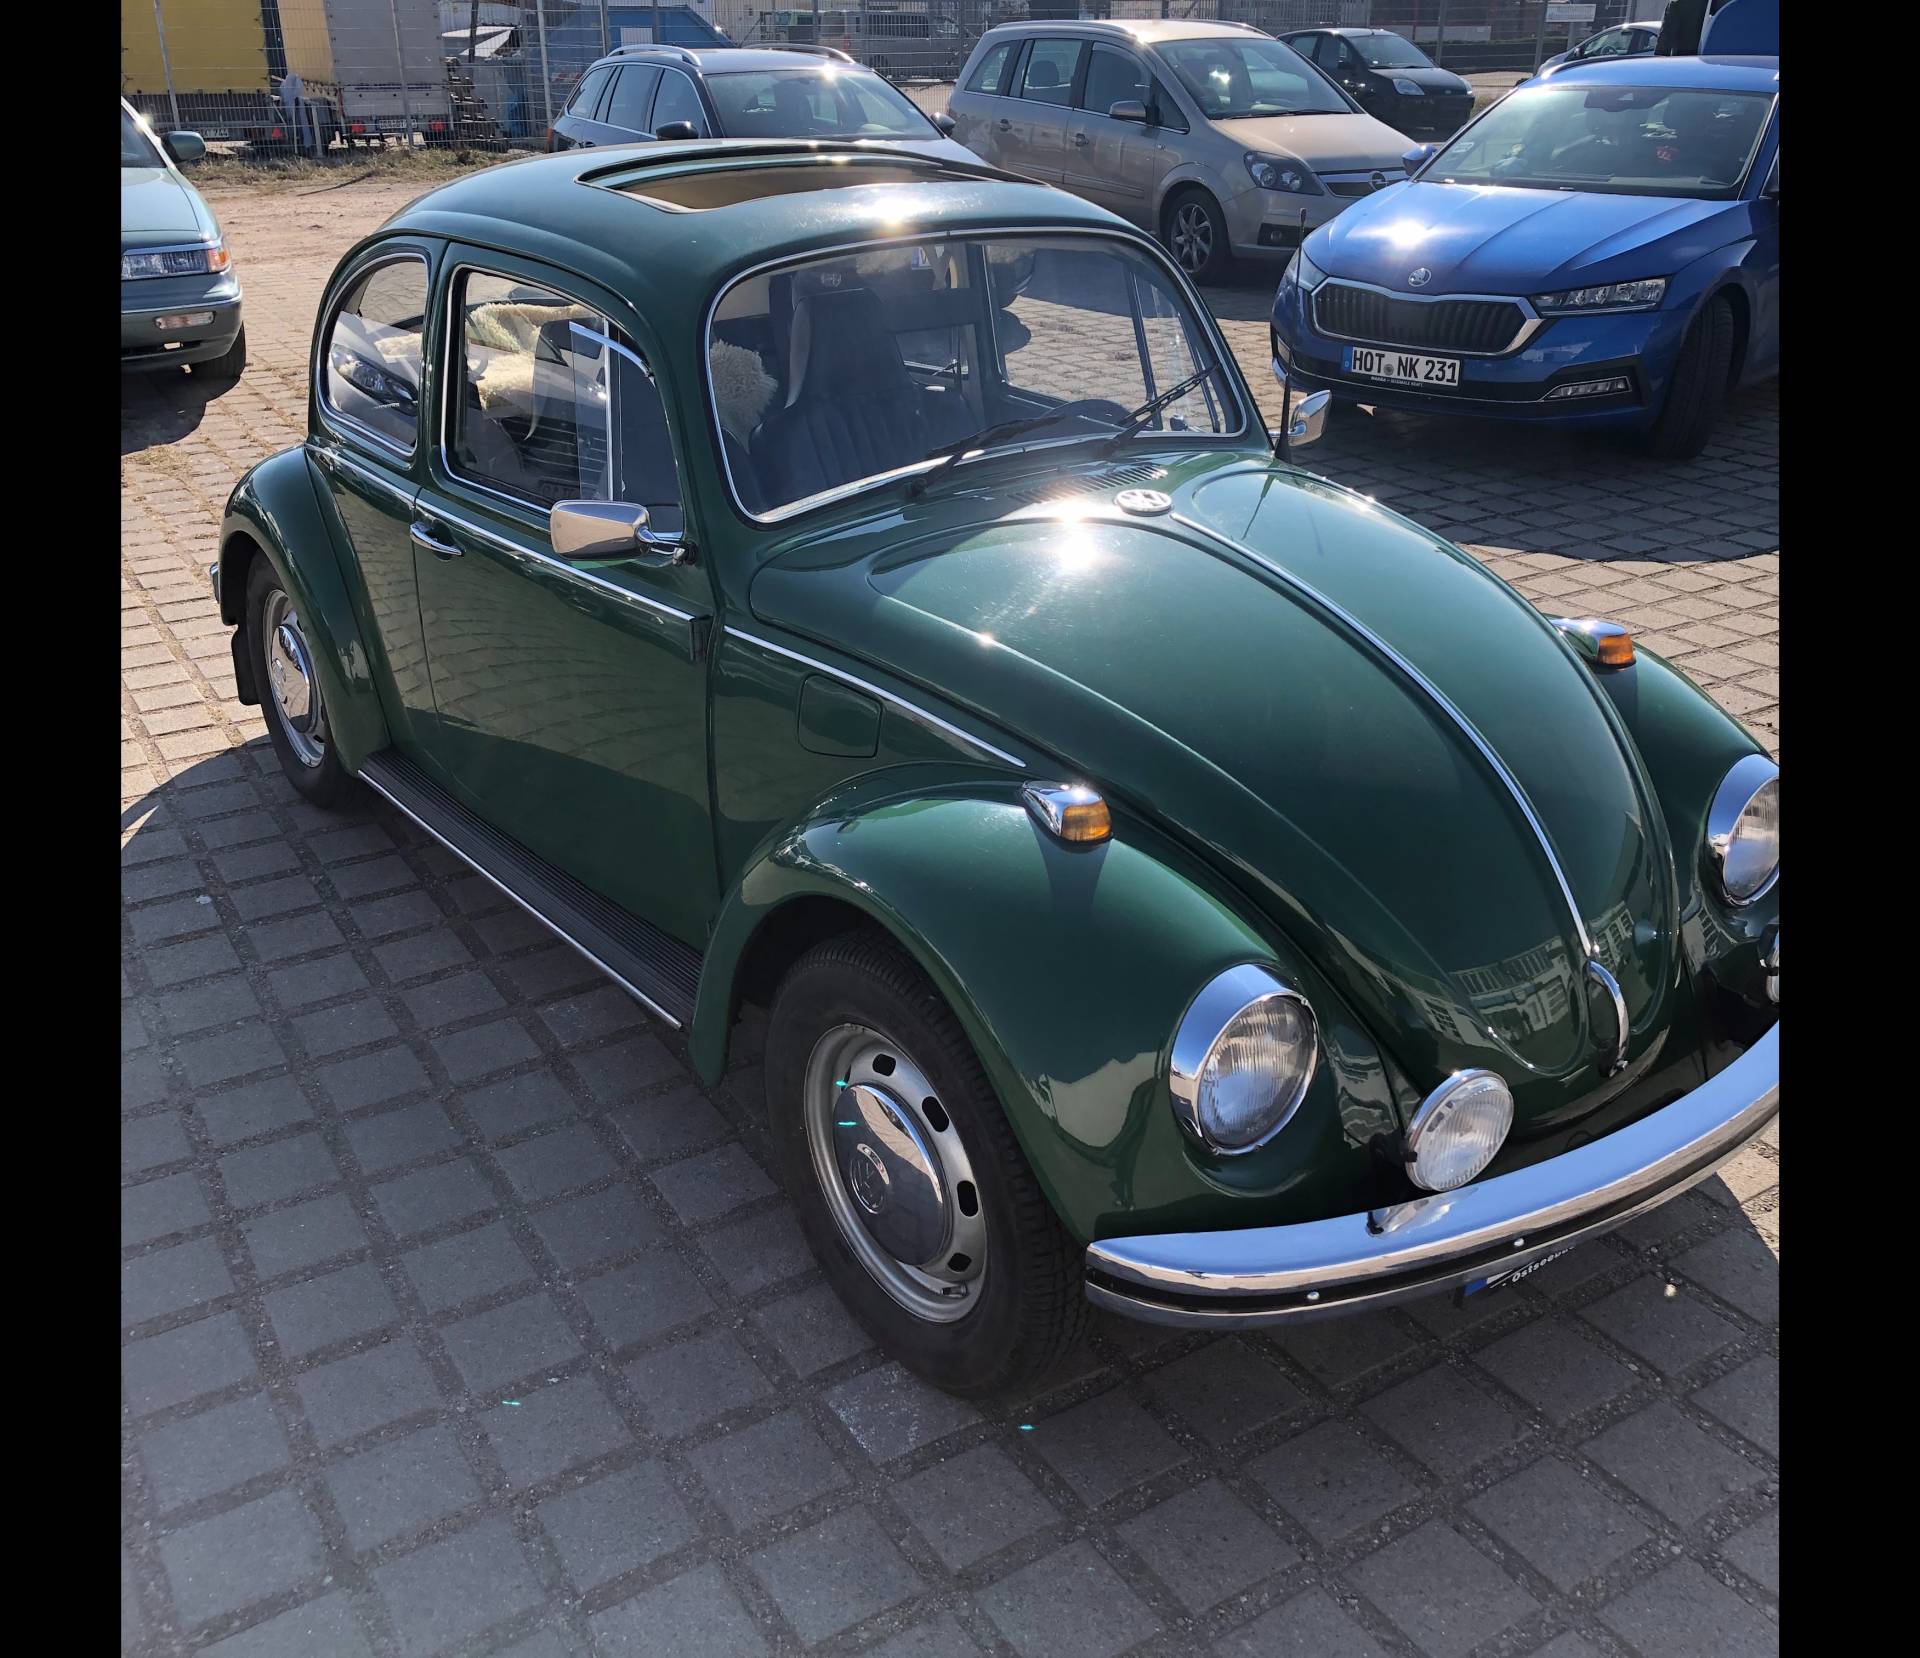 Volkswagen Beetle 1500